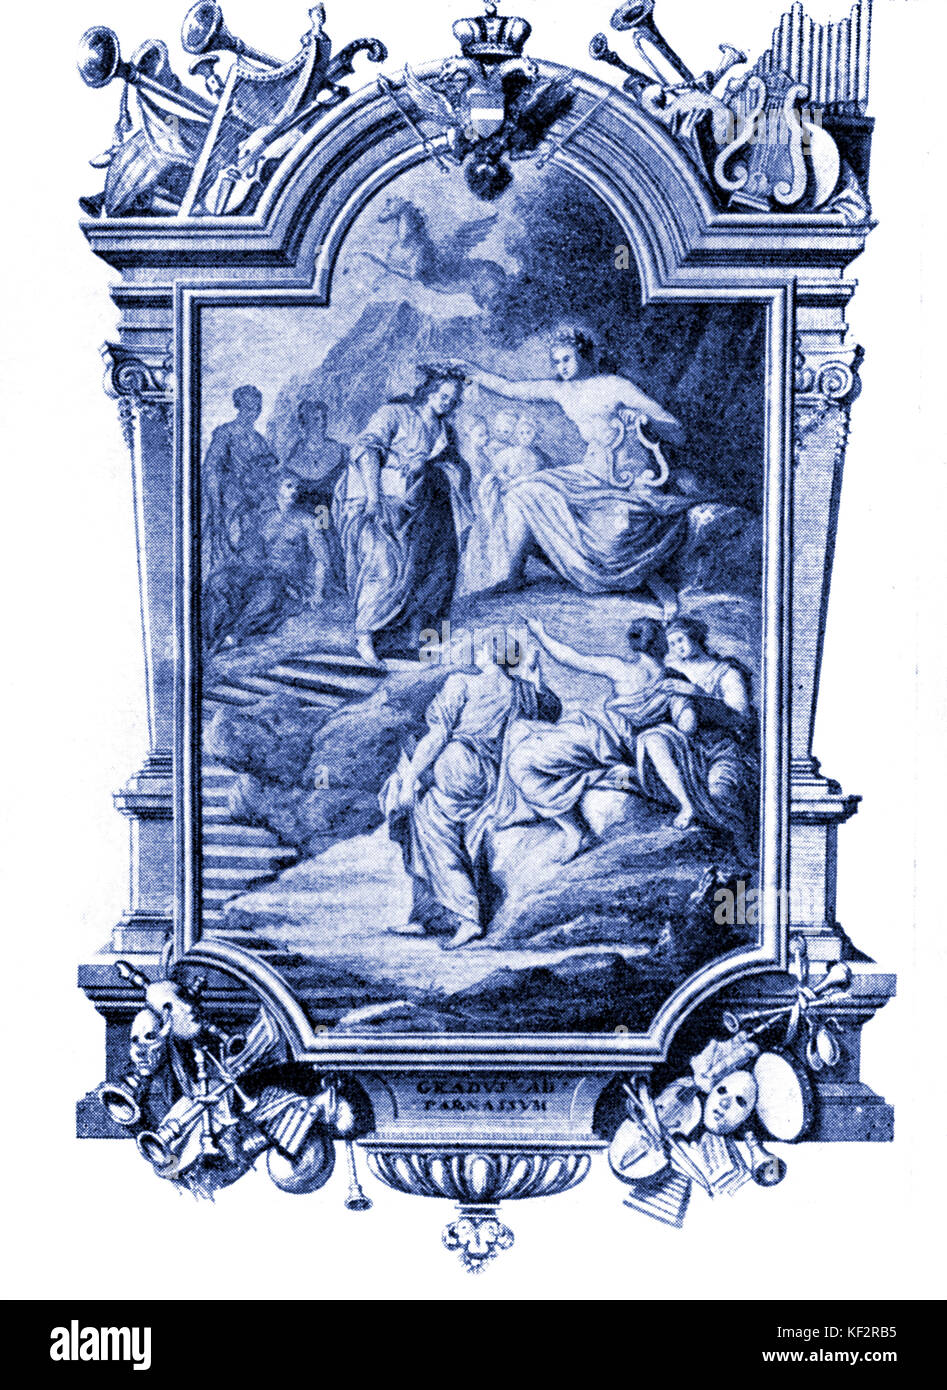 Johann Joseph Fux - frontispice gravé au compositeur autrichien, traité "gradus ad Parnassum", Vienne, 1725. JJF : 1660 - 13 février 1741. L'un des livres les plus influents sur le style de la Renaissance Palestrina polyphonie. Banque D'Images